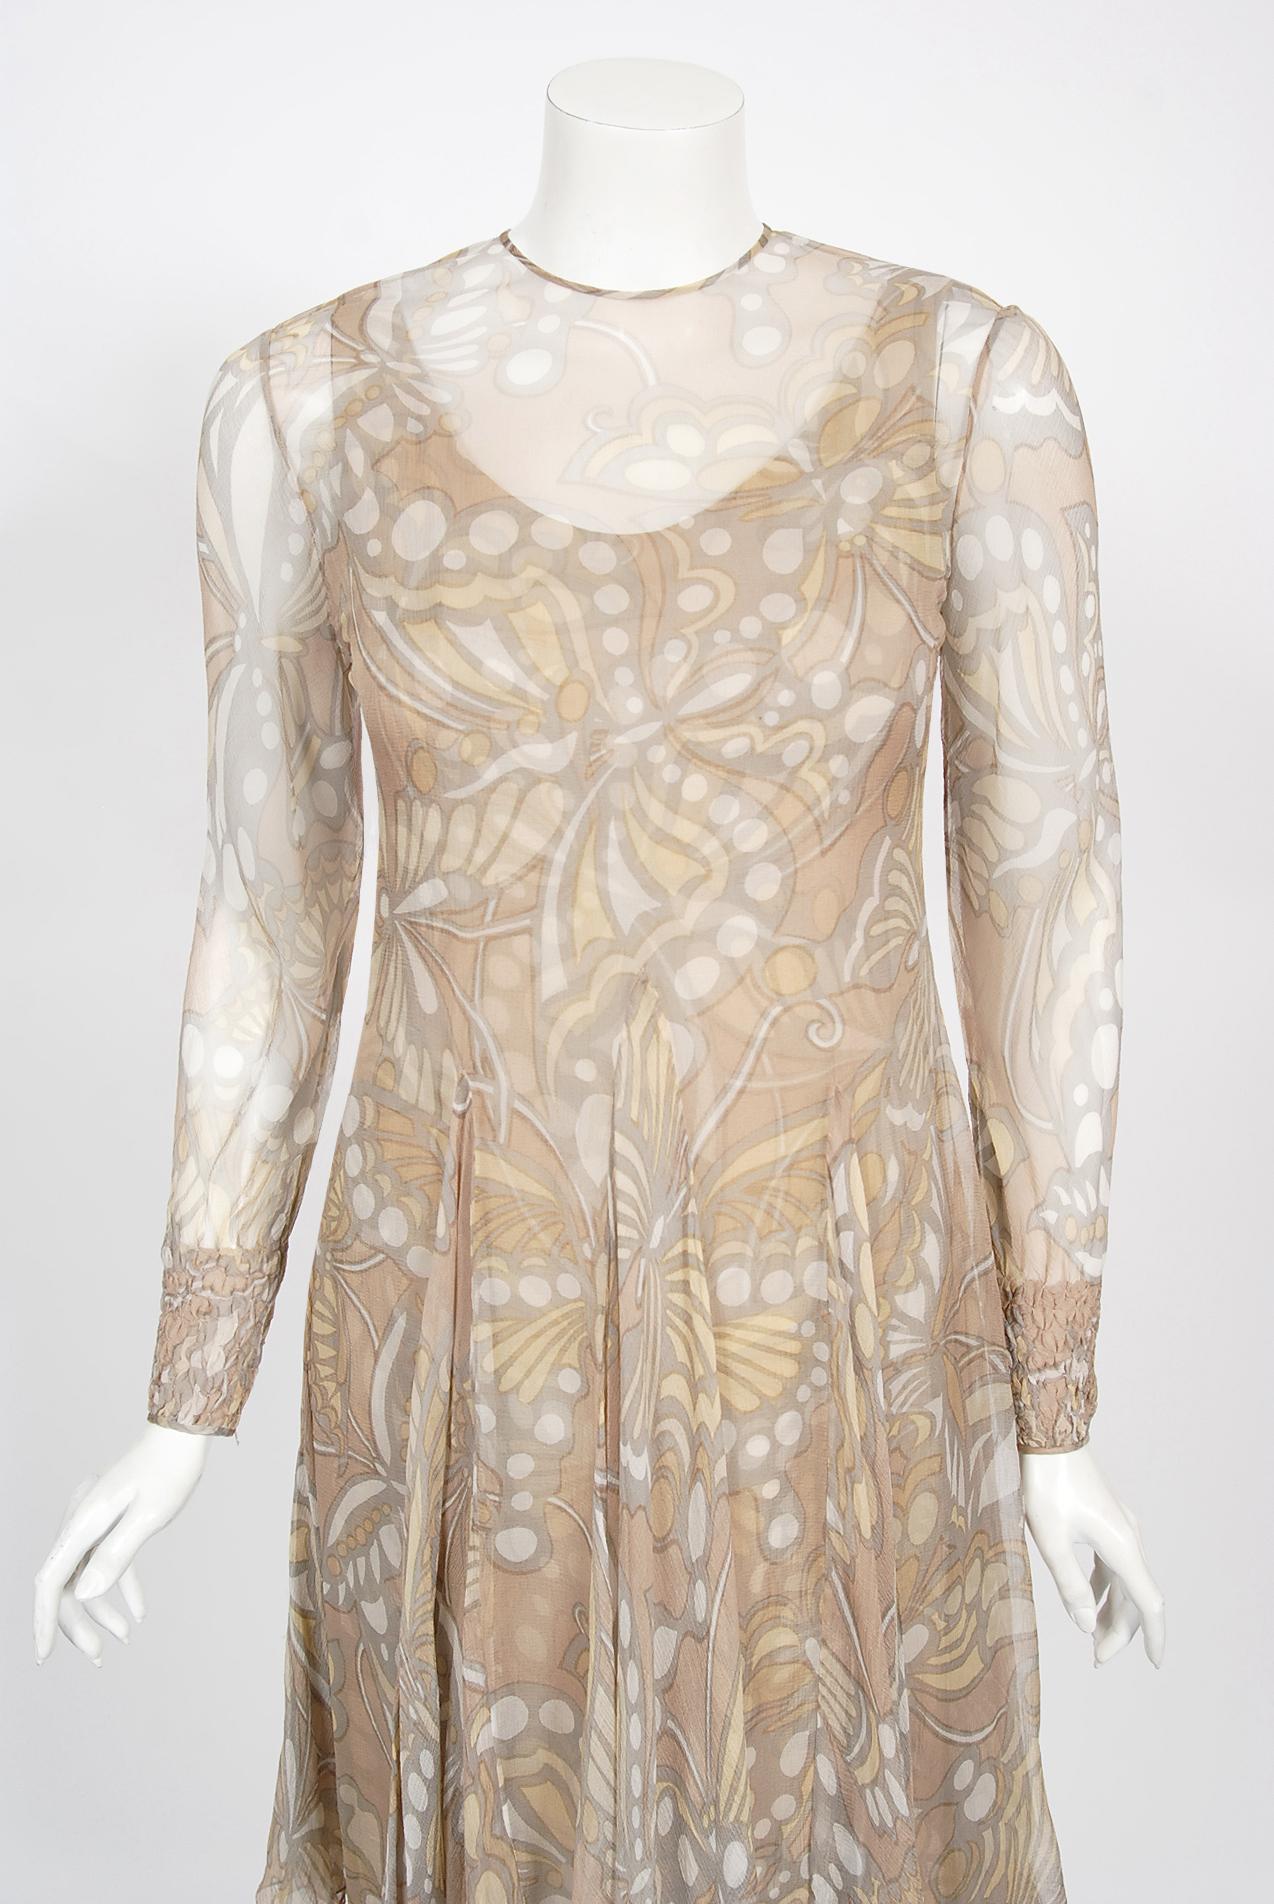 Magnifique ensemble de robes en mousseline de soie nue imprimée de papillons, datant de la collection 1969 de Galanos. Le dévouement à l'excellence de l'artisanat et du design a été le fondement de la longue carrière de James Galanos. La qualité de